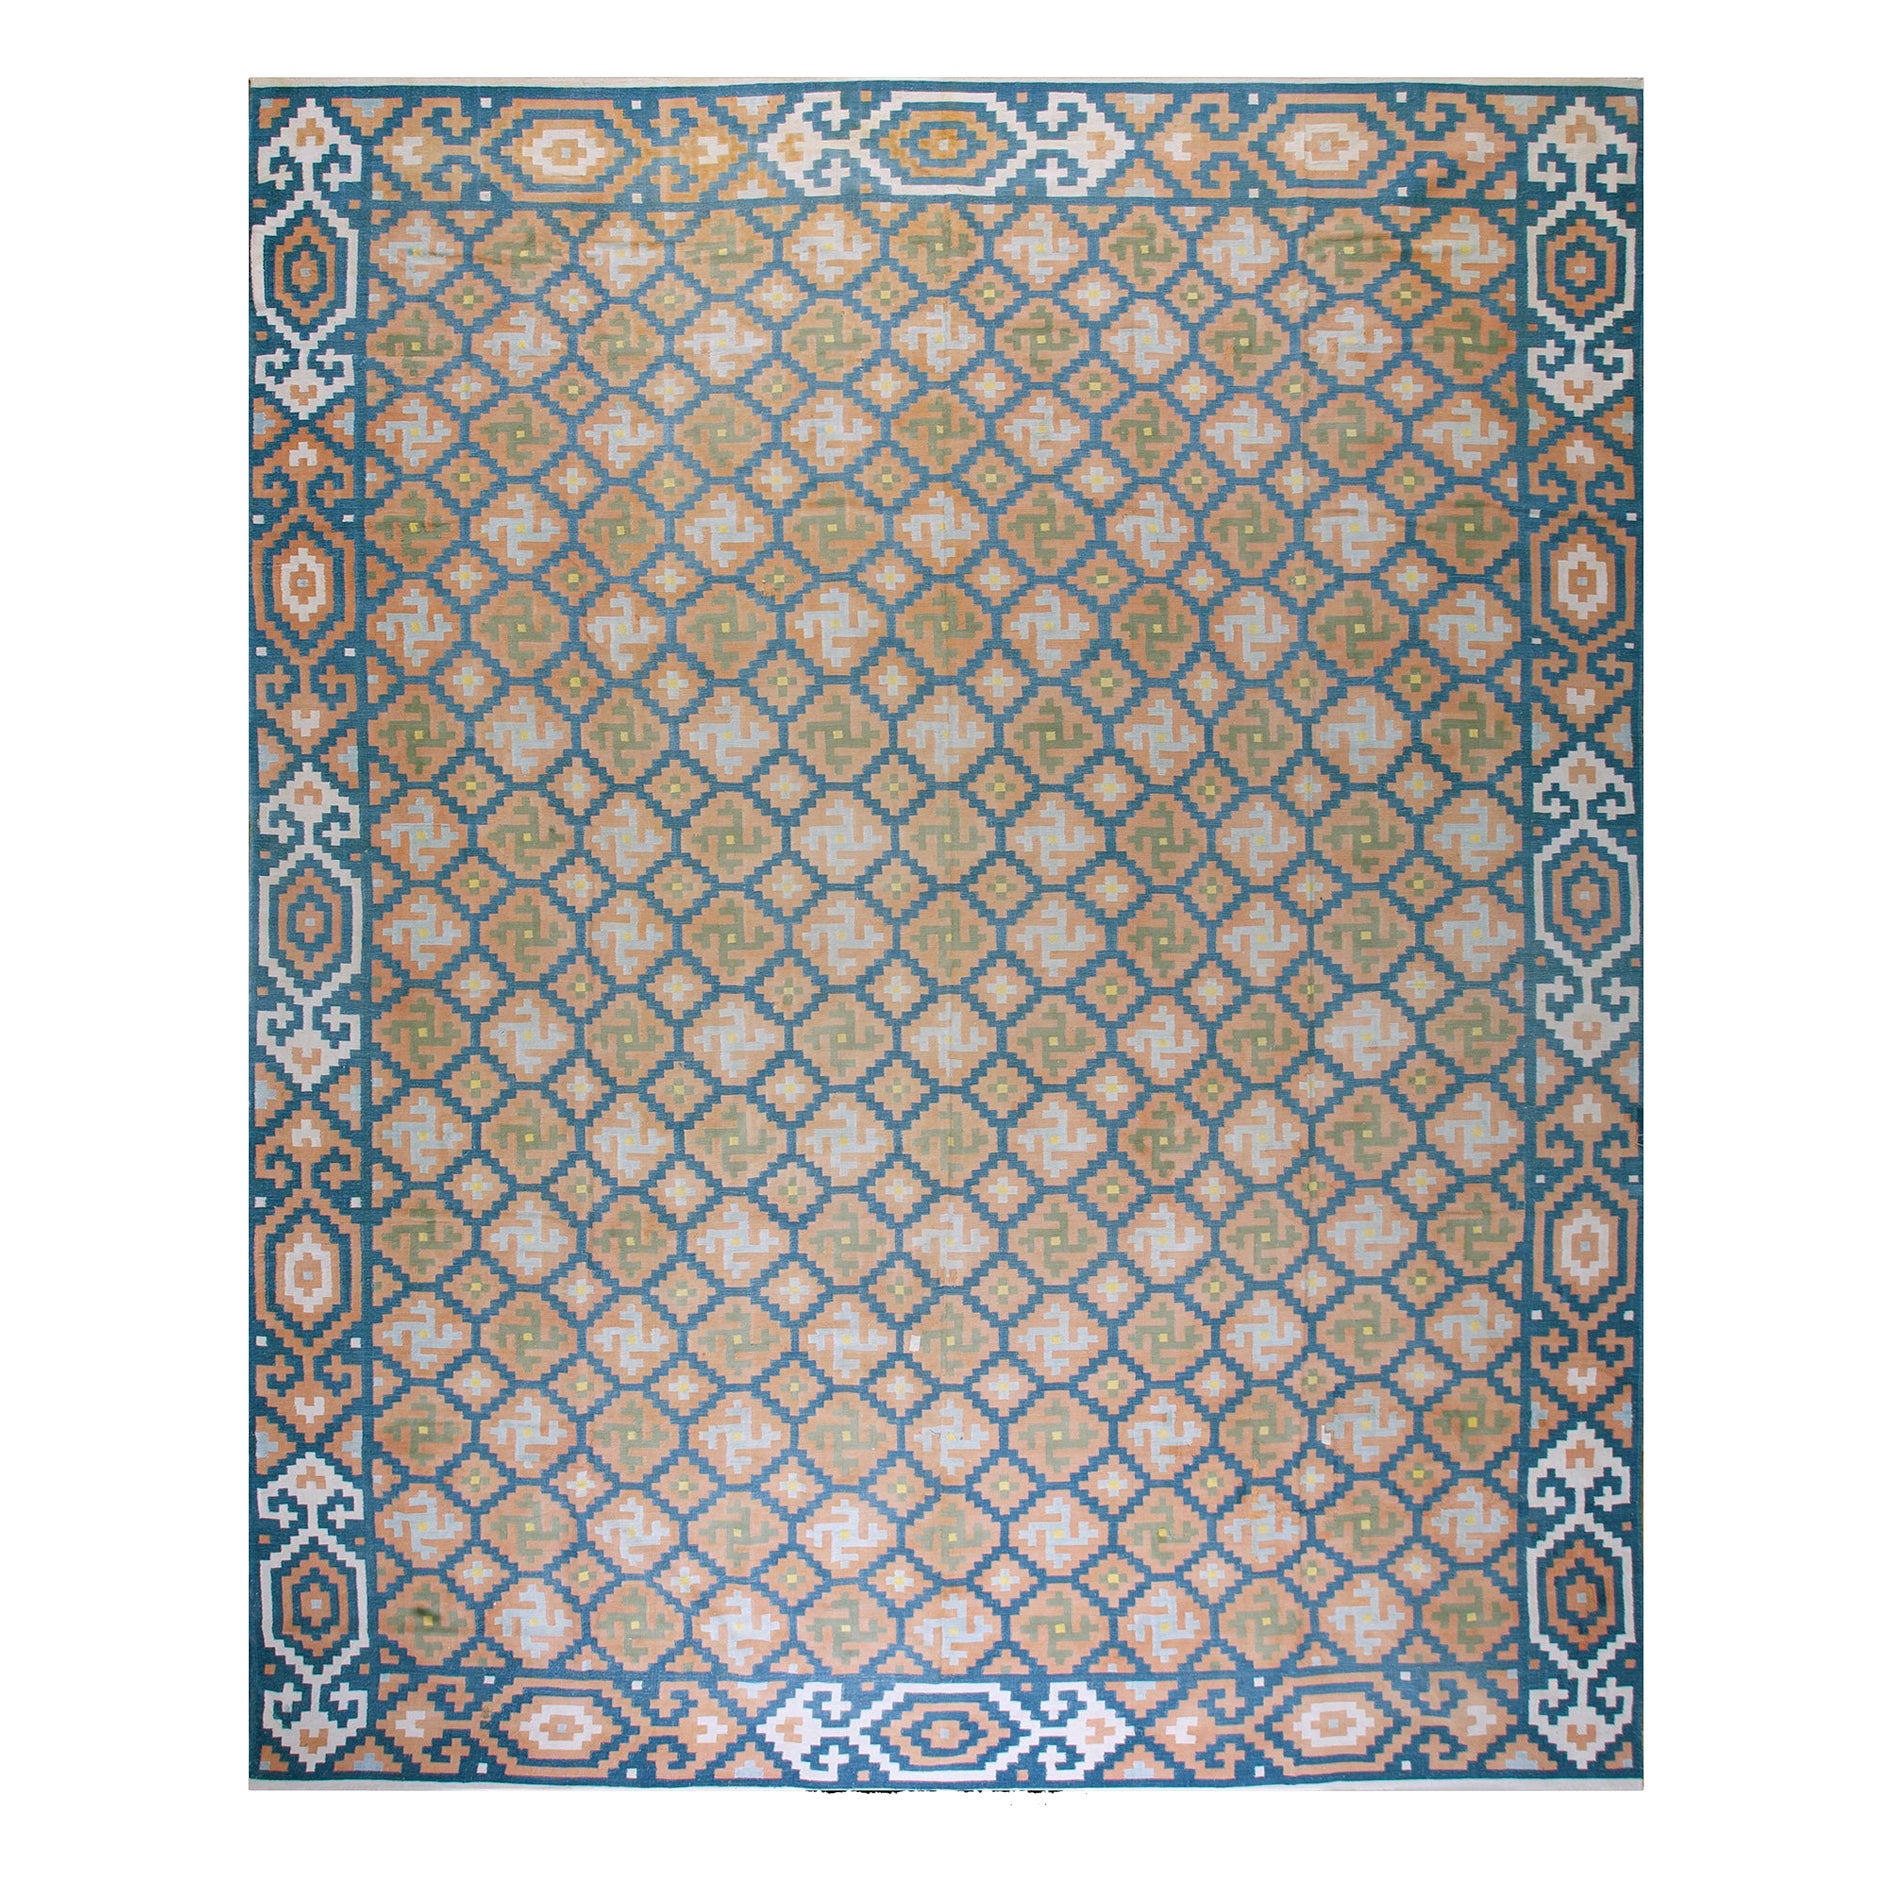 1930s Indian Cotton Dhurrie Carpet ( 12'2" x 15'2" - 371 x 462 )